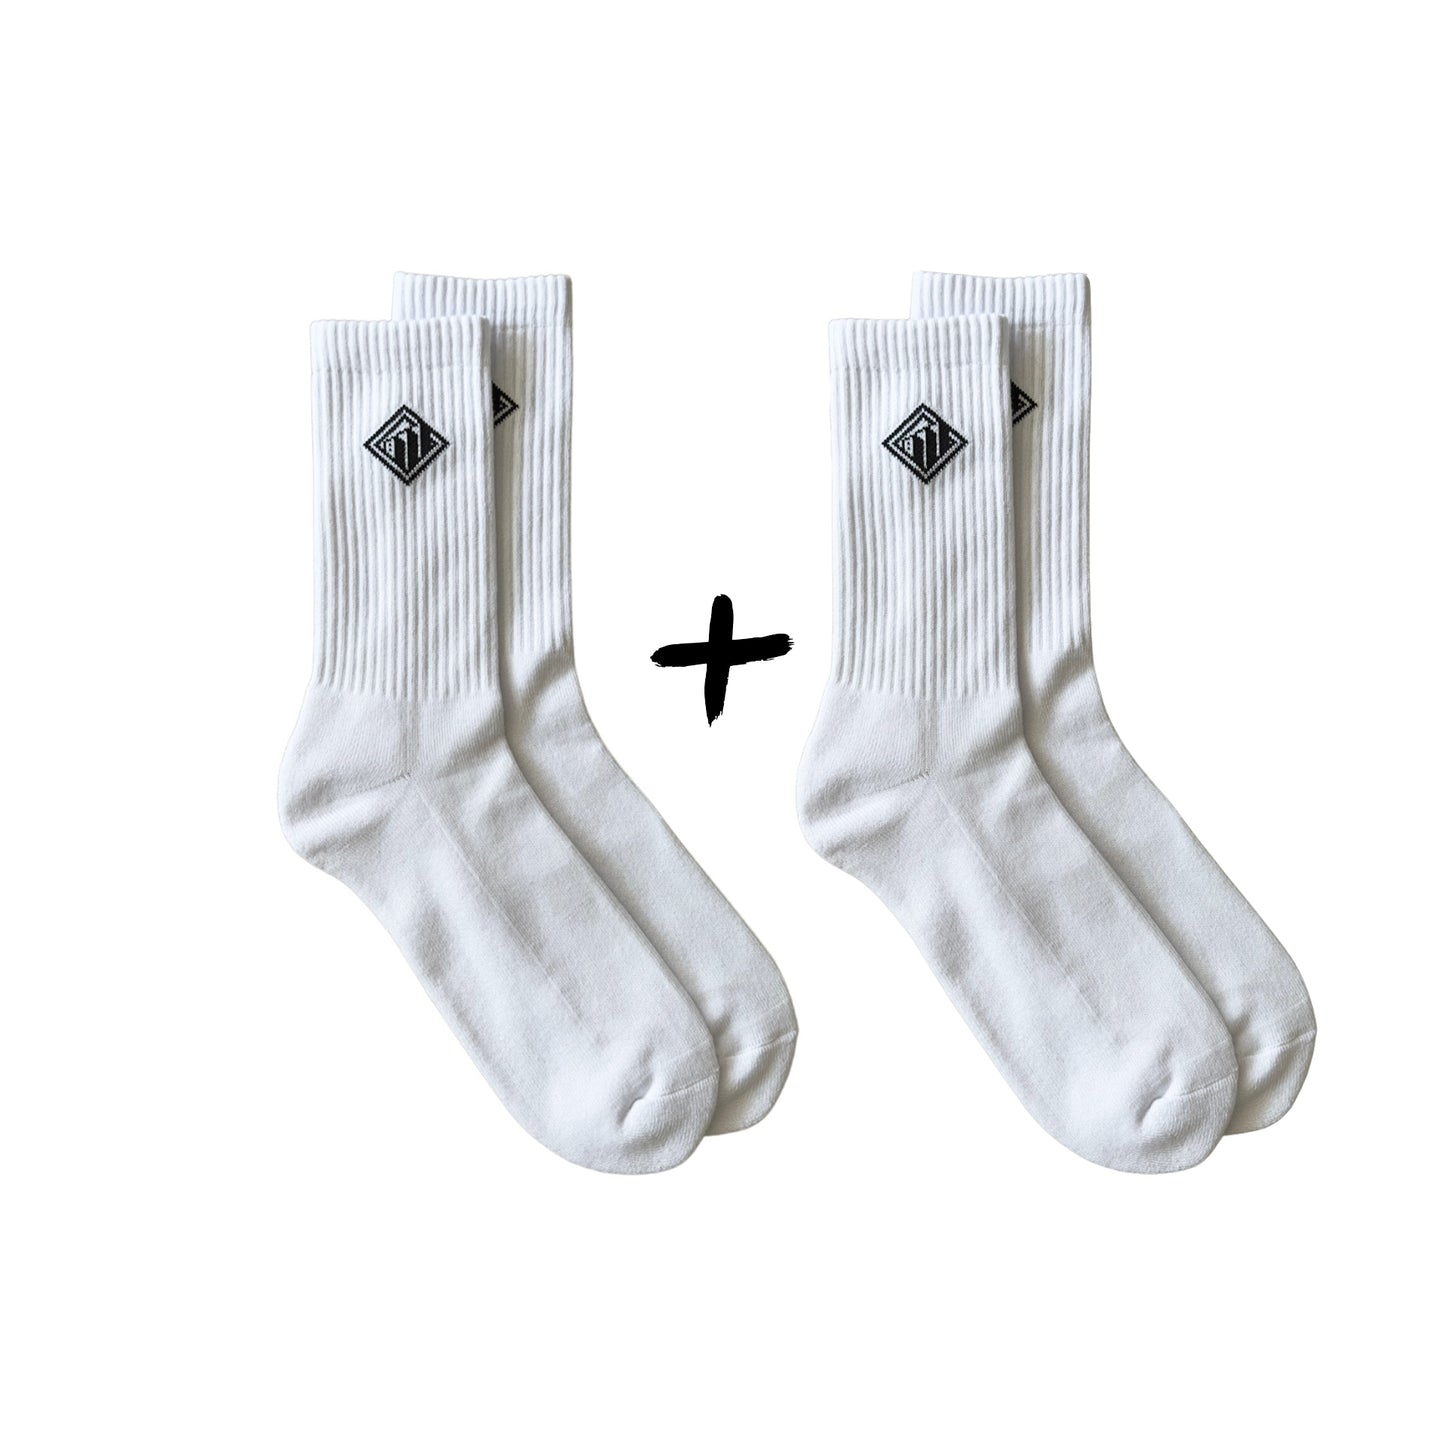 RUPTOWN socks - 2 pack